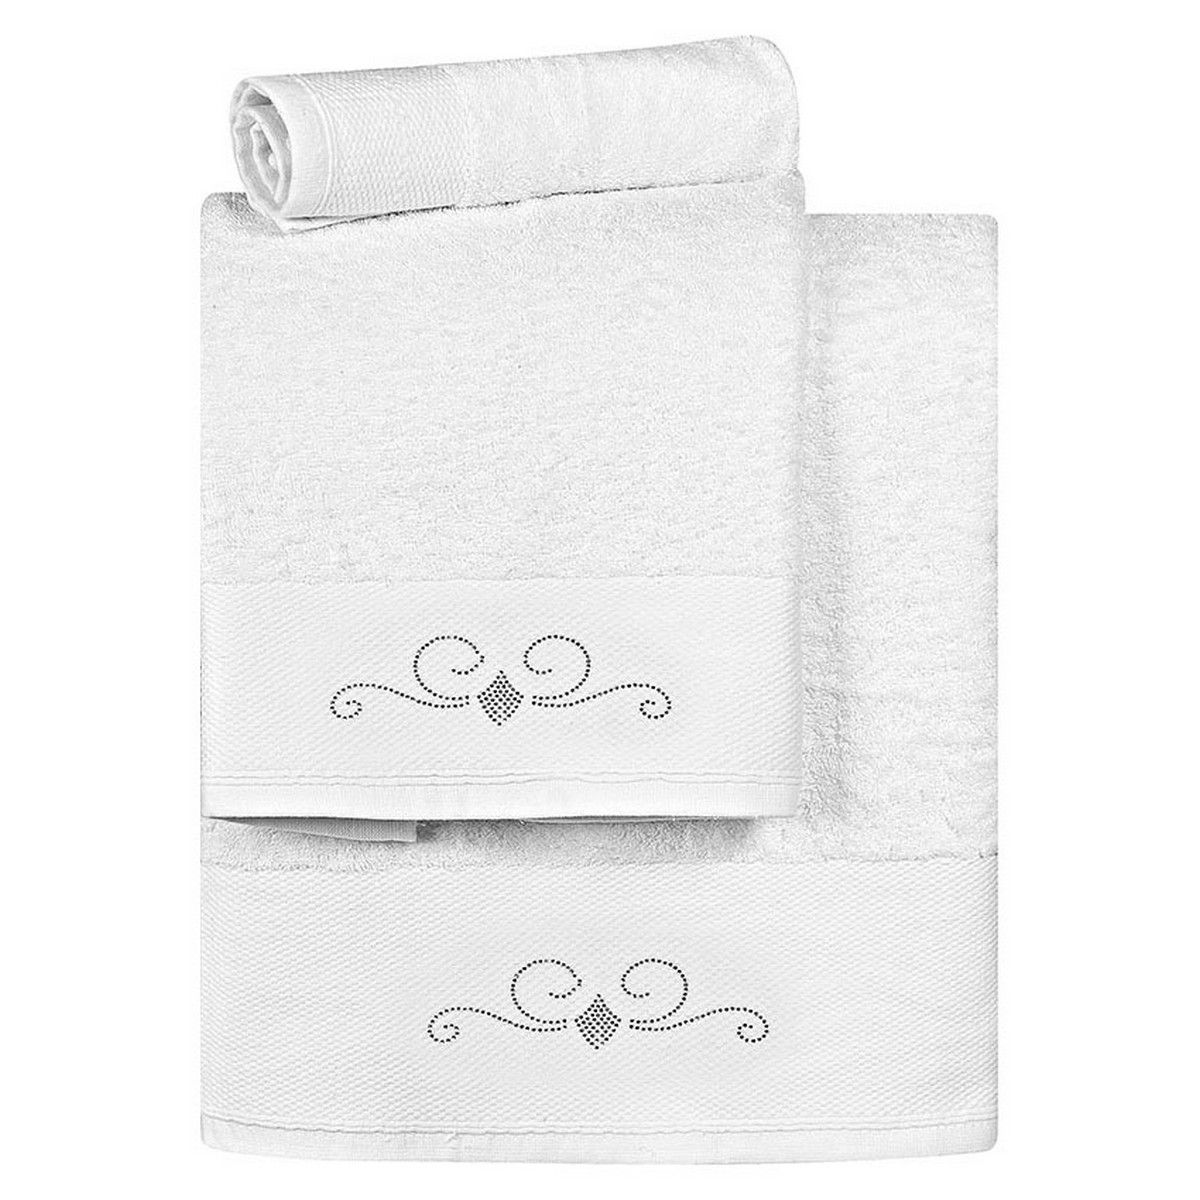 Πετσέτες σετ Art 3170 white beauty home